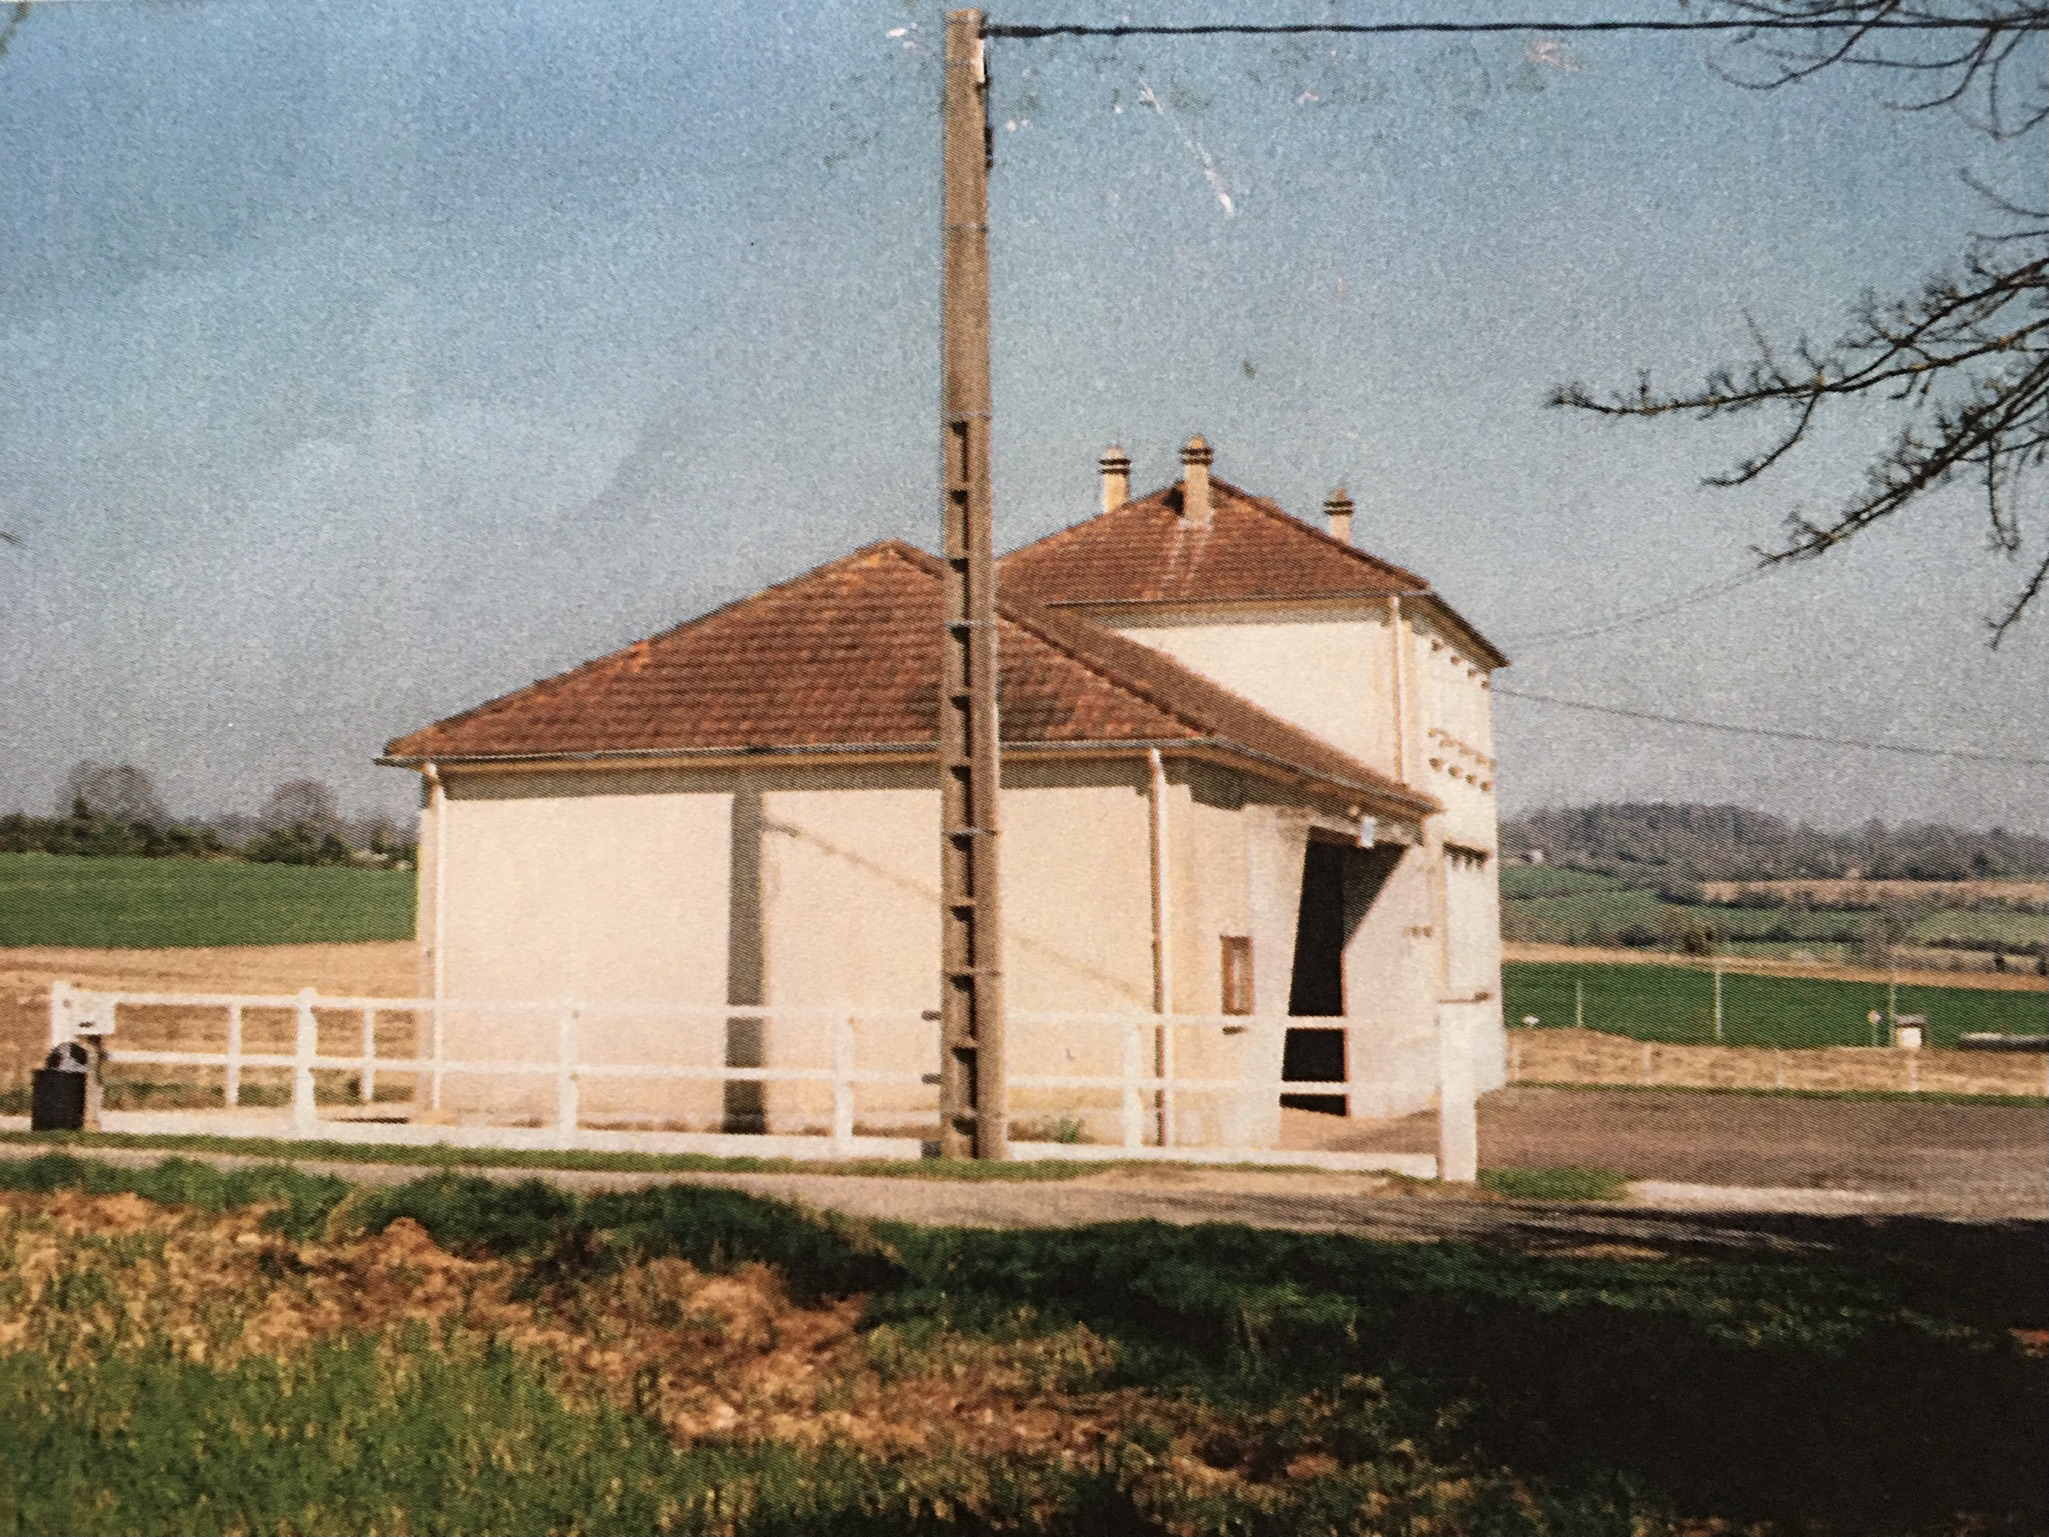 Ecole construite en 1957 vue de profil